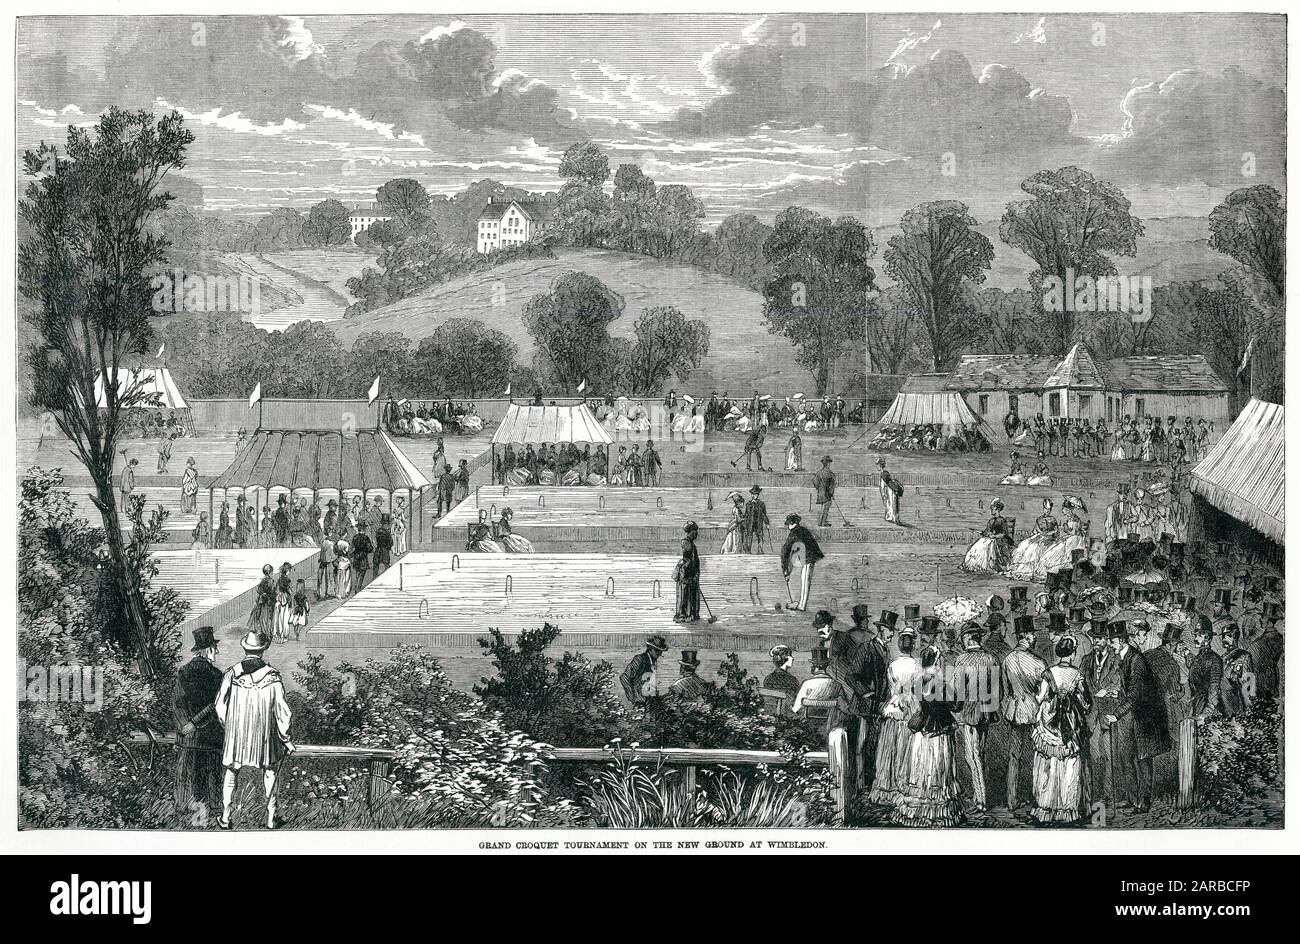 Croquet tournament at Wimbledon, London 1870 Stock Photo